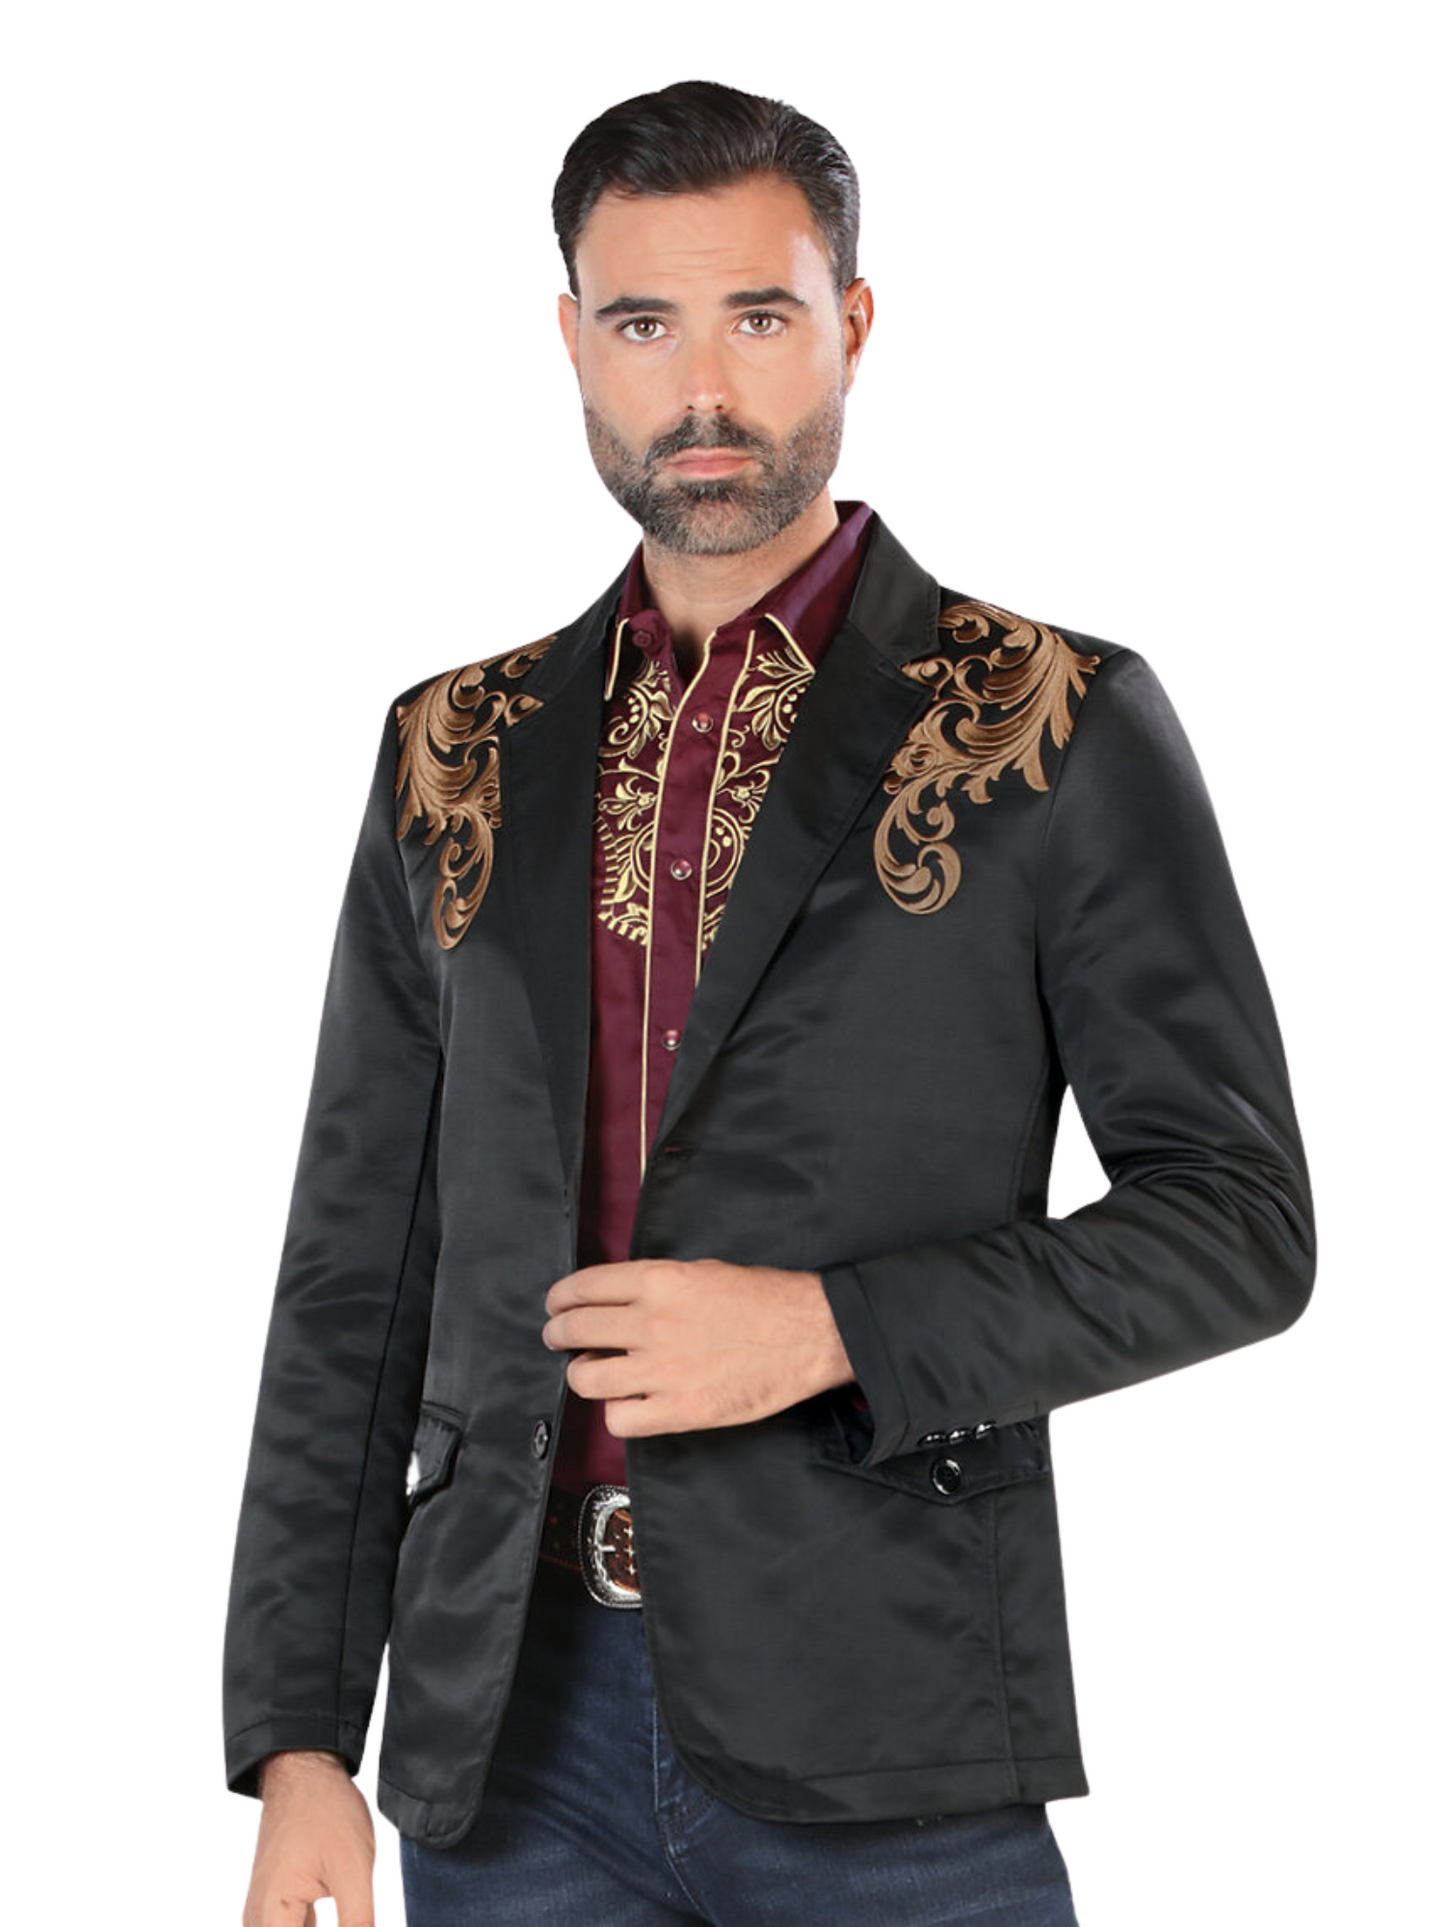 Embroidered Denim Jacket for Men 'Montero' - ID: 2173 Western Blazer Montero Black/Brown